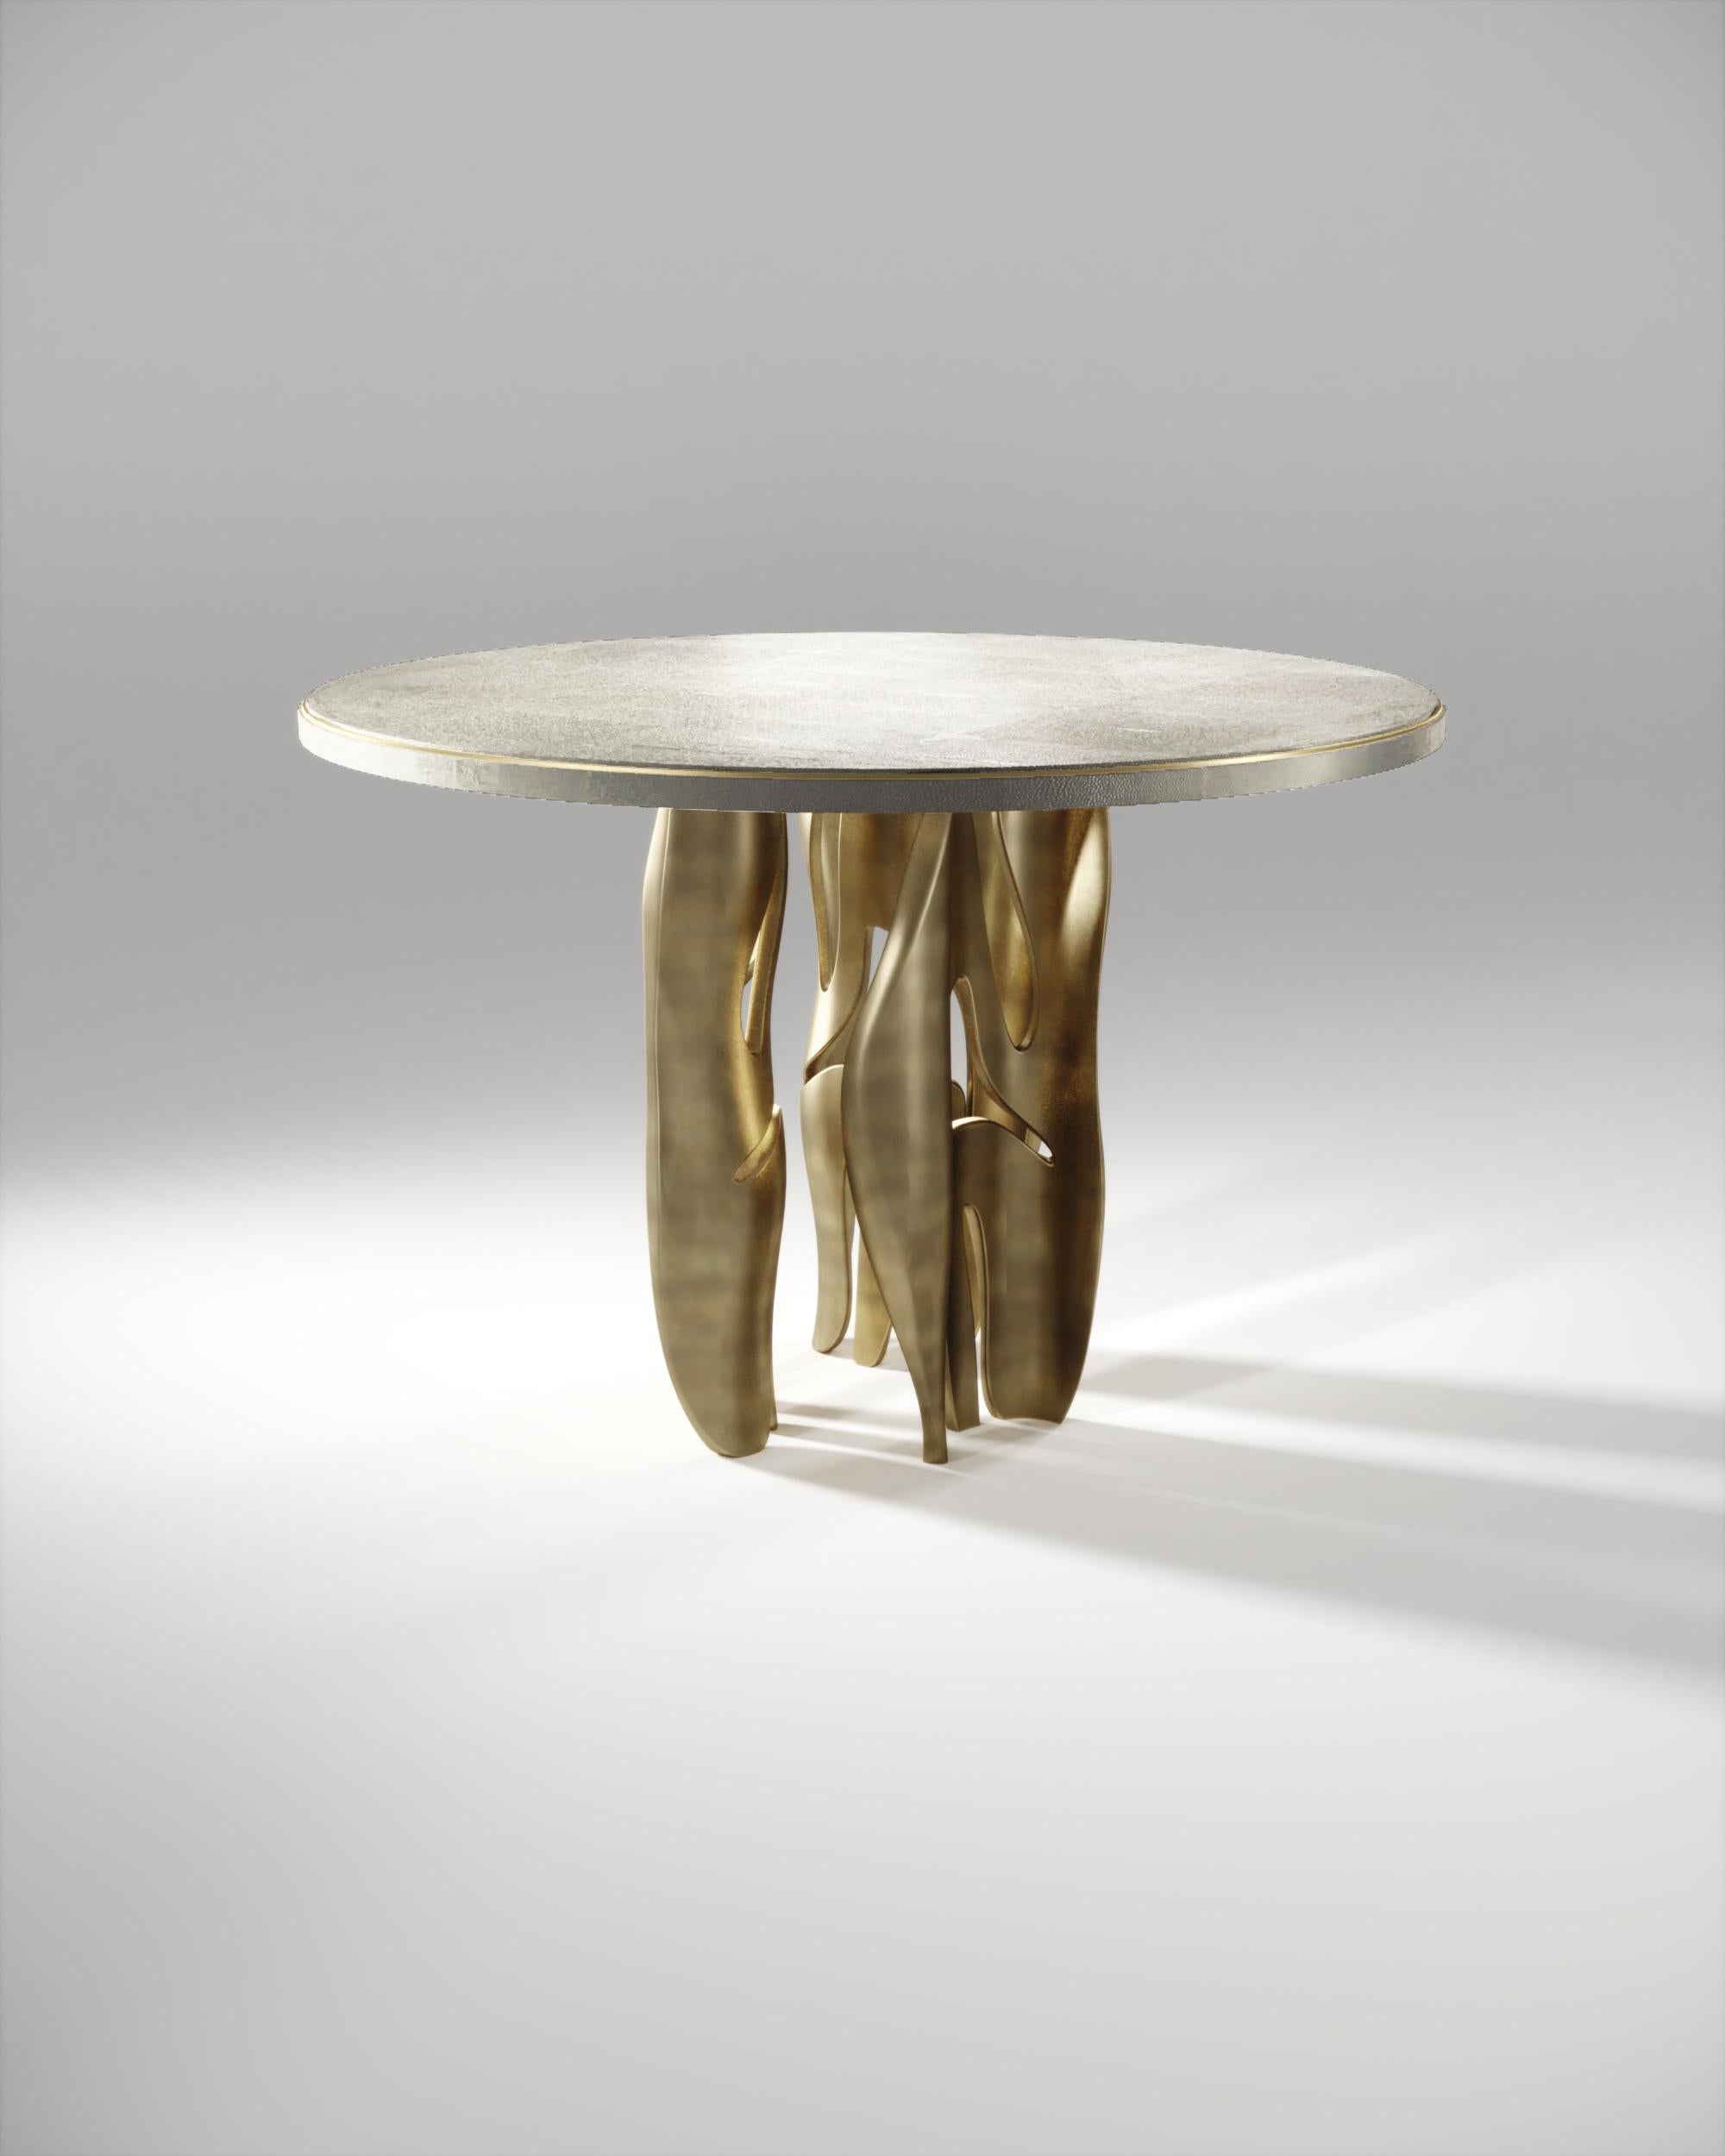 Der Frühstückstisch Metropolis II von R&Y Augousti ist ein Statement. Die runde, cremefarbene Platte mit Intarsien aus Chagrin und einer diskreten Einkerbung aus Metall steht auf einer Gruppe dramatischer, skulpturaler Beine aus